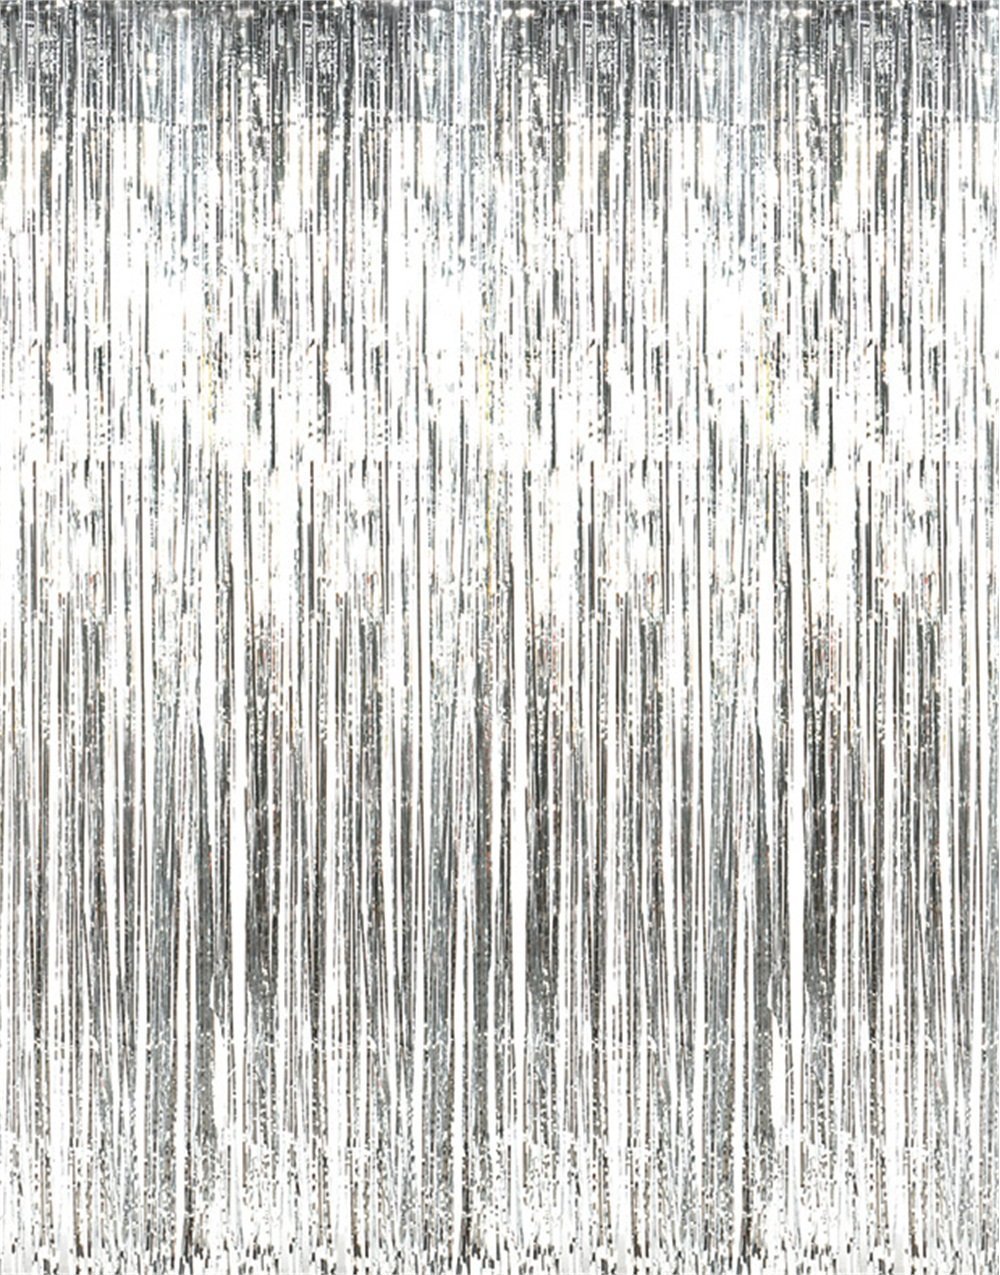 Unique 3' x 8' Silver Fringe Door Curtain